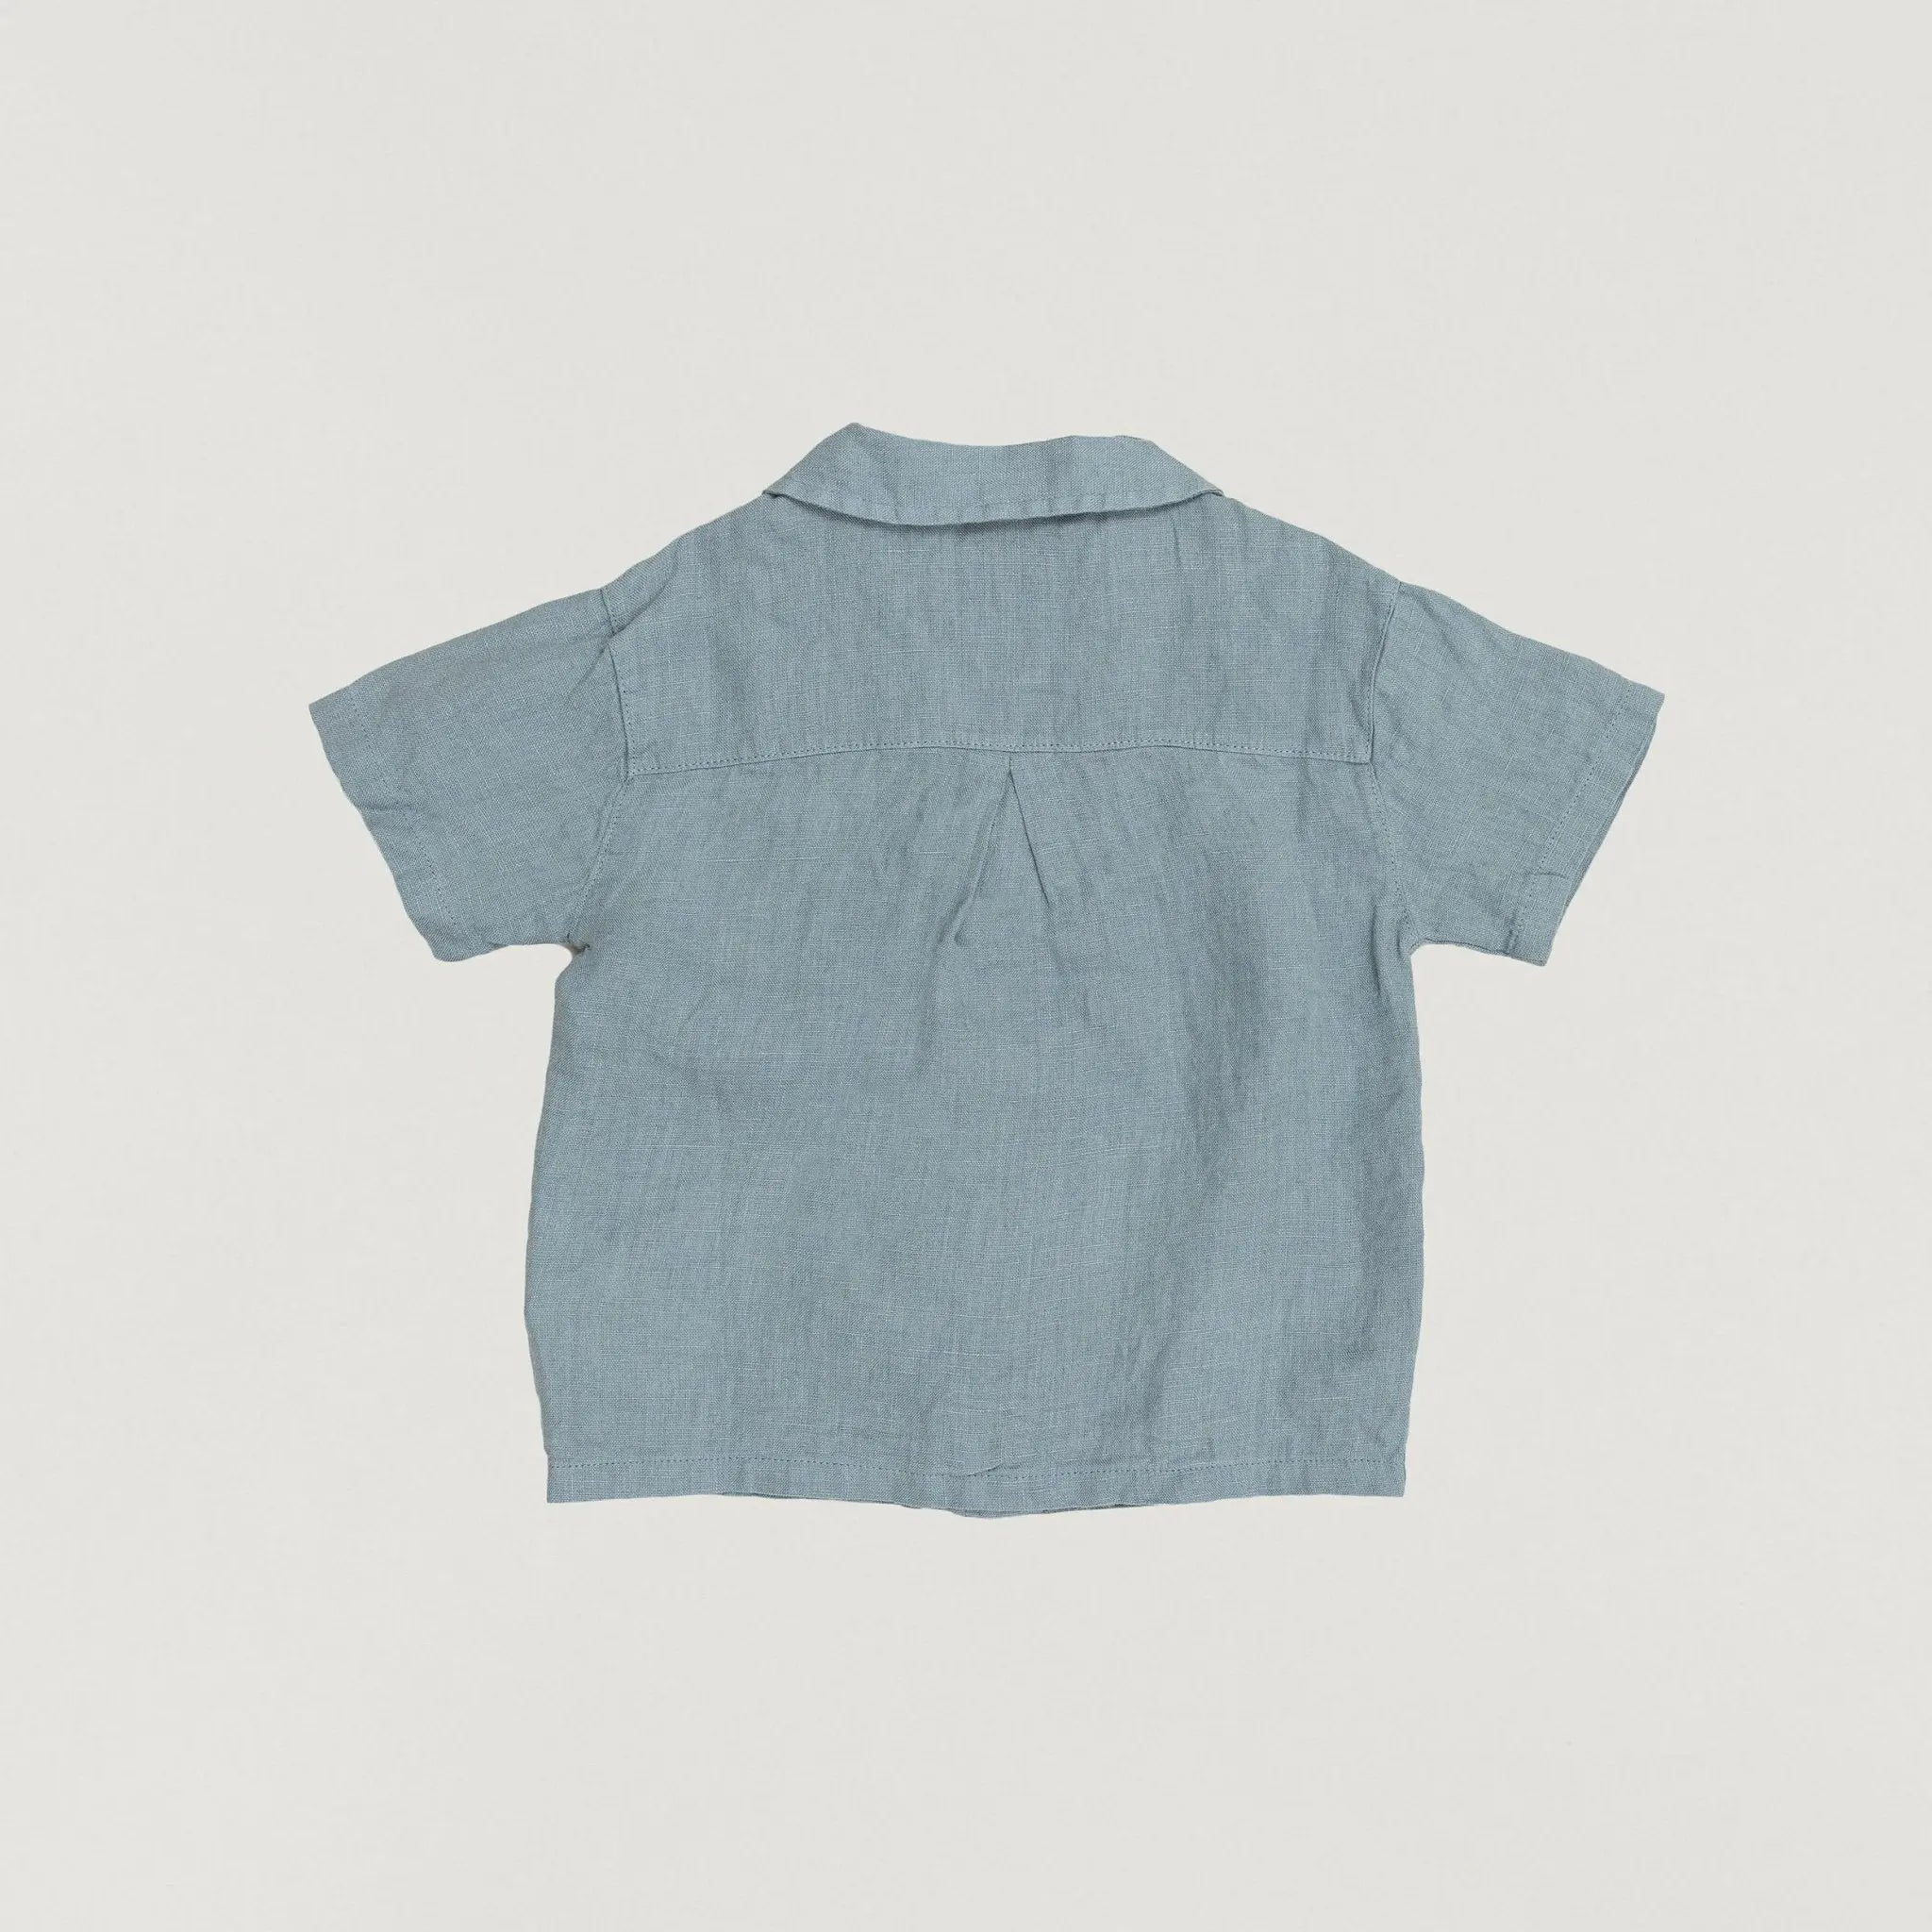 Babybox and Family Play Up Shirt mit Kragen aus Leinen 3Y steel-blue-pu #farbe_3Y